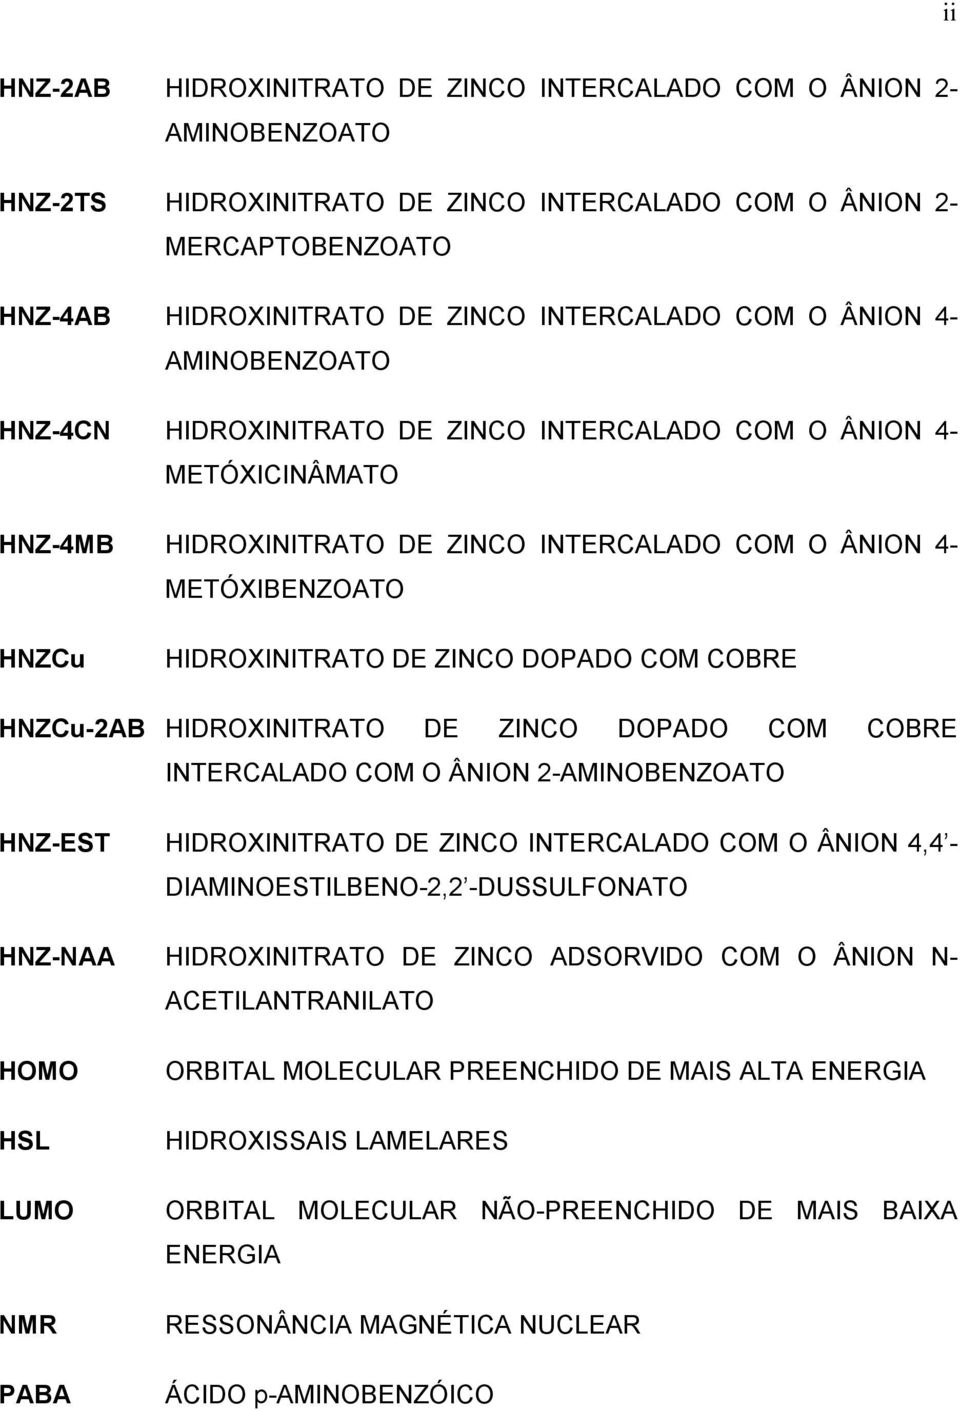 ZINCO DOPADO COM COBRE HNZCu-2AB HIDROXINITRATO DE ZINCO DOPADO COM COBRE INTERCALADO COM O ÂNION 2-AMINOBENZOATO HNZ-EST HIDROXINITRATO DE ZINCO INTERCALADO COM O ÂNION 4,4 - DIAMINOESTILBENO-2,2